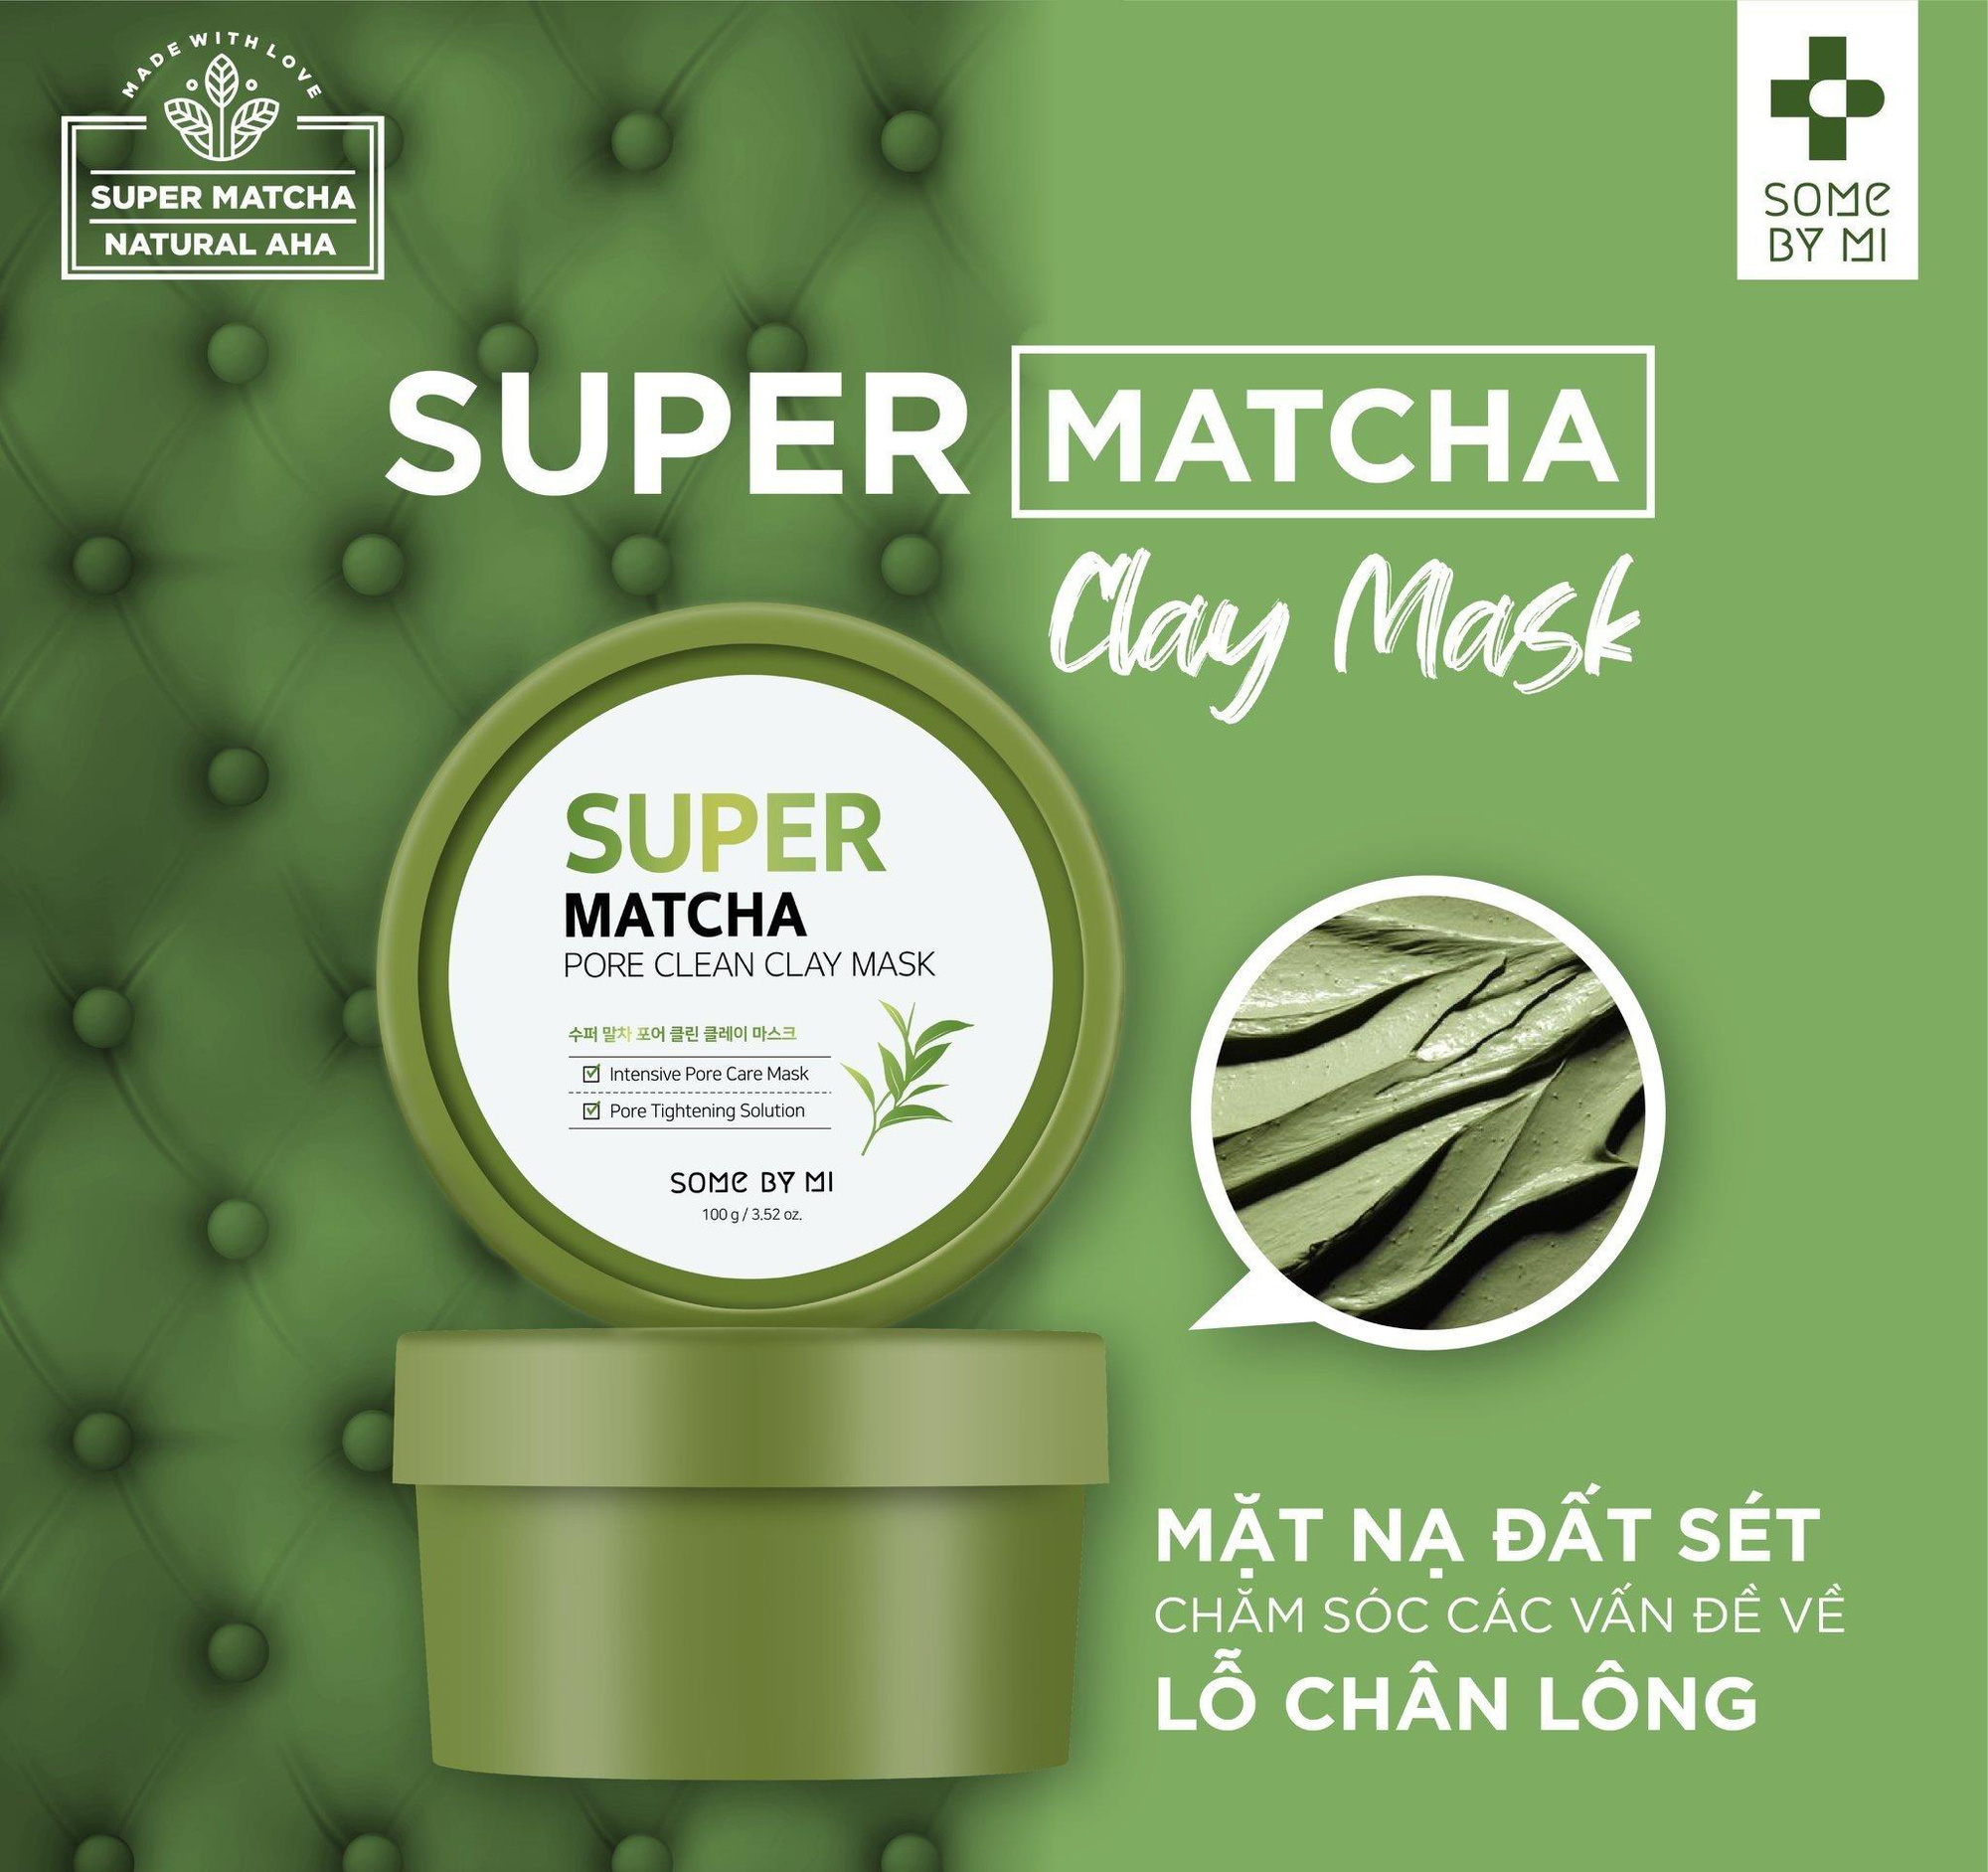 Dòng sản phẩm mới “khuấy đảo thị trường” Super Matcha của Some By Mi đã có mặt tại Việt Nam với quà cực hấp dẫn - Ảnh 5.